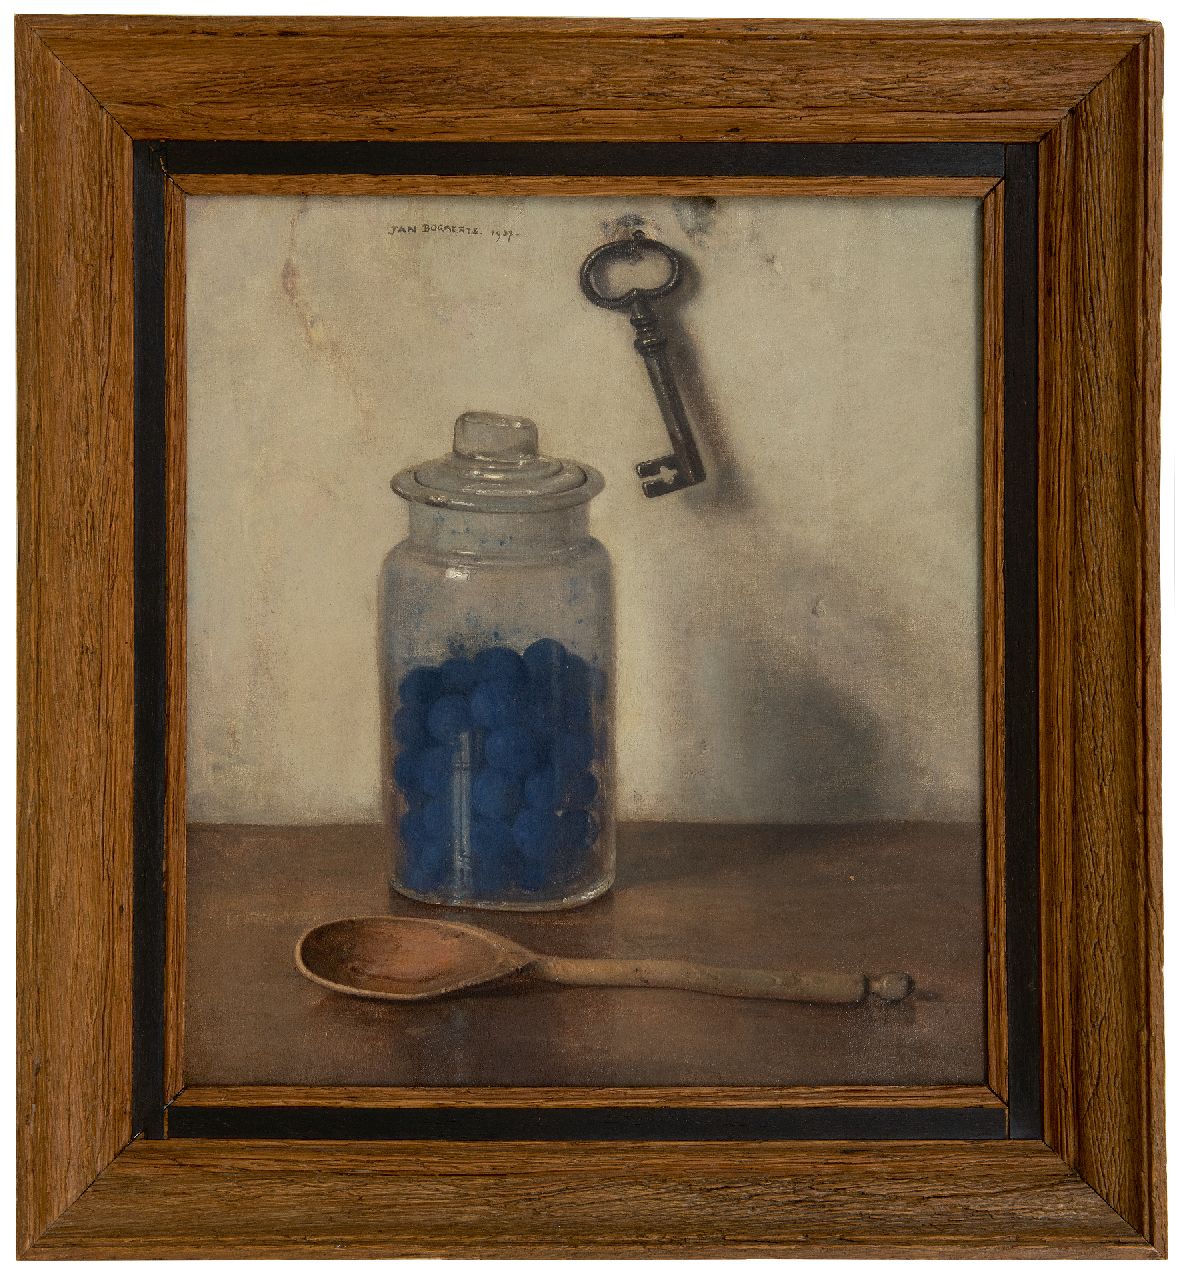 Bogaerts J.J.M.  | Johannes Jacobus Maria 'Jan' Bogaerts | Schilderijen te koop aangeboden | Glazen pot met blauwselbollen, olieverf op doek 36,0 x 32,9 cm, gesigneerd m.b. en gedateerd 1937